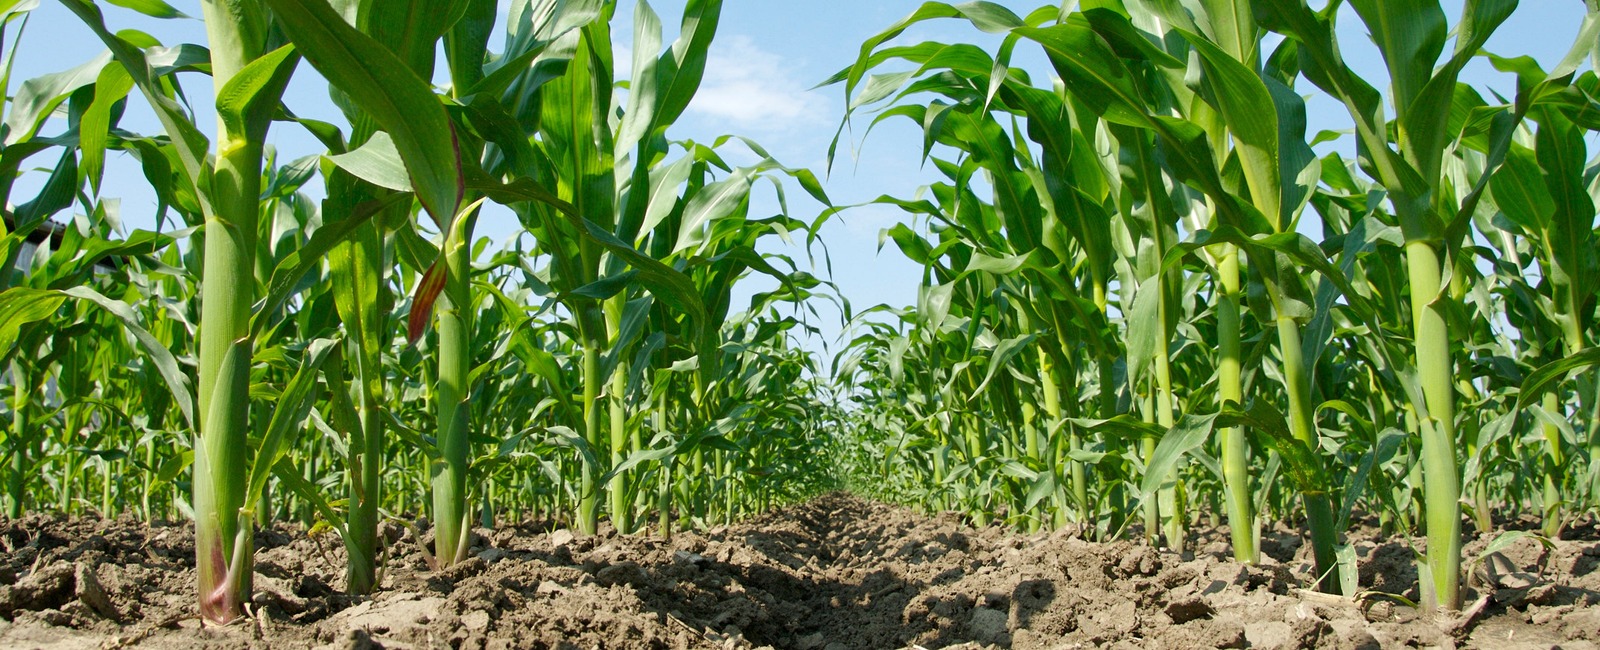 Kukurūzų auginimas pasauliniu mastu